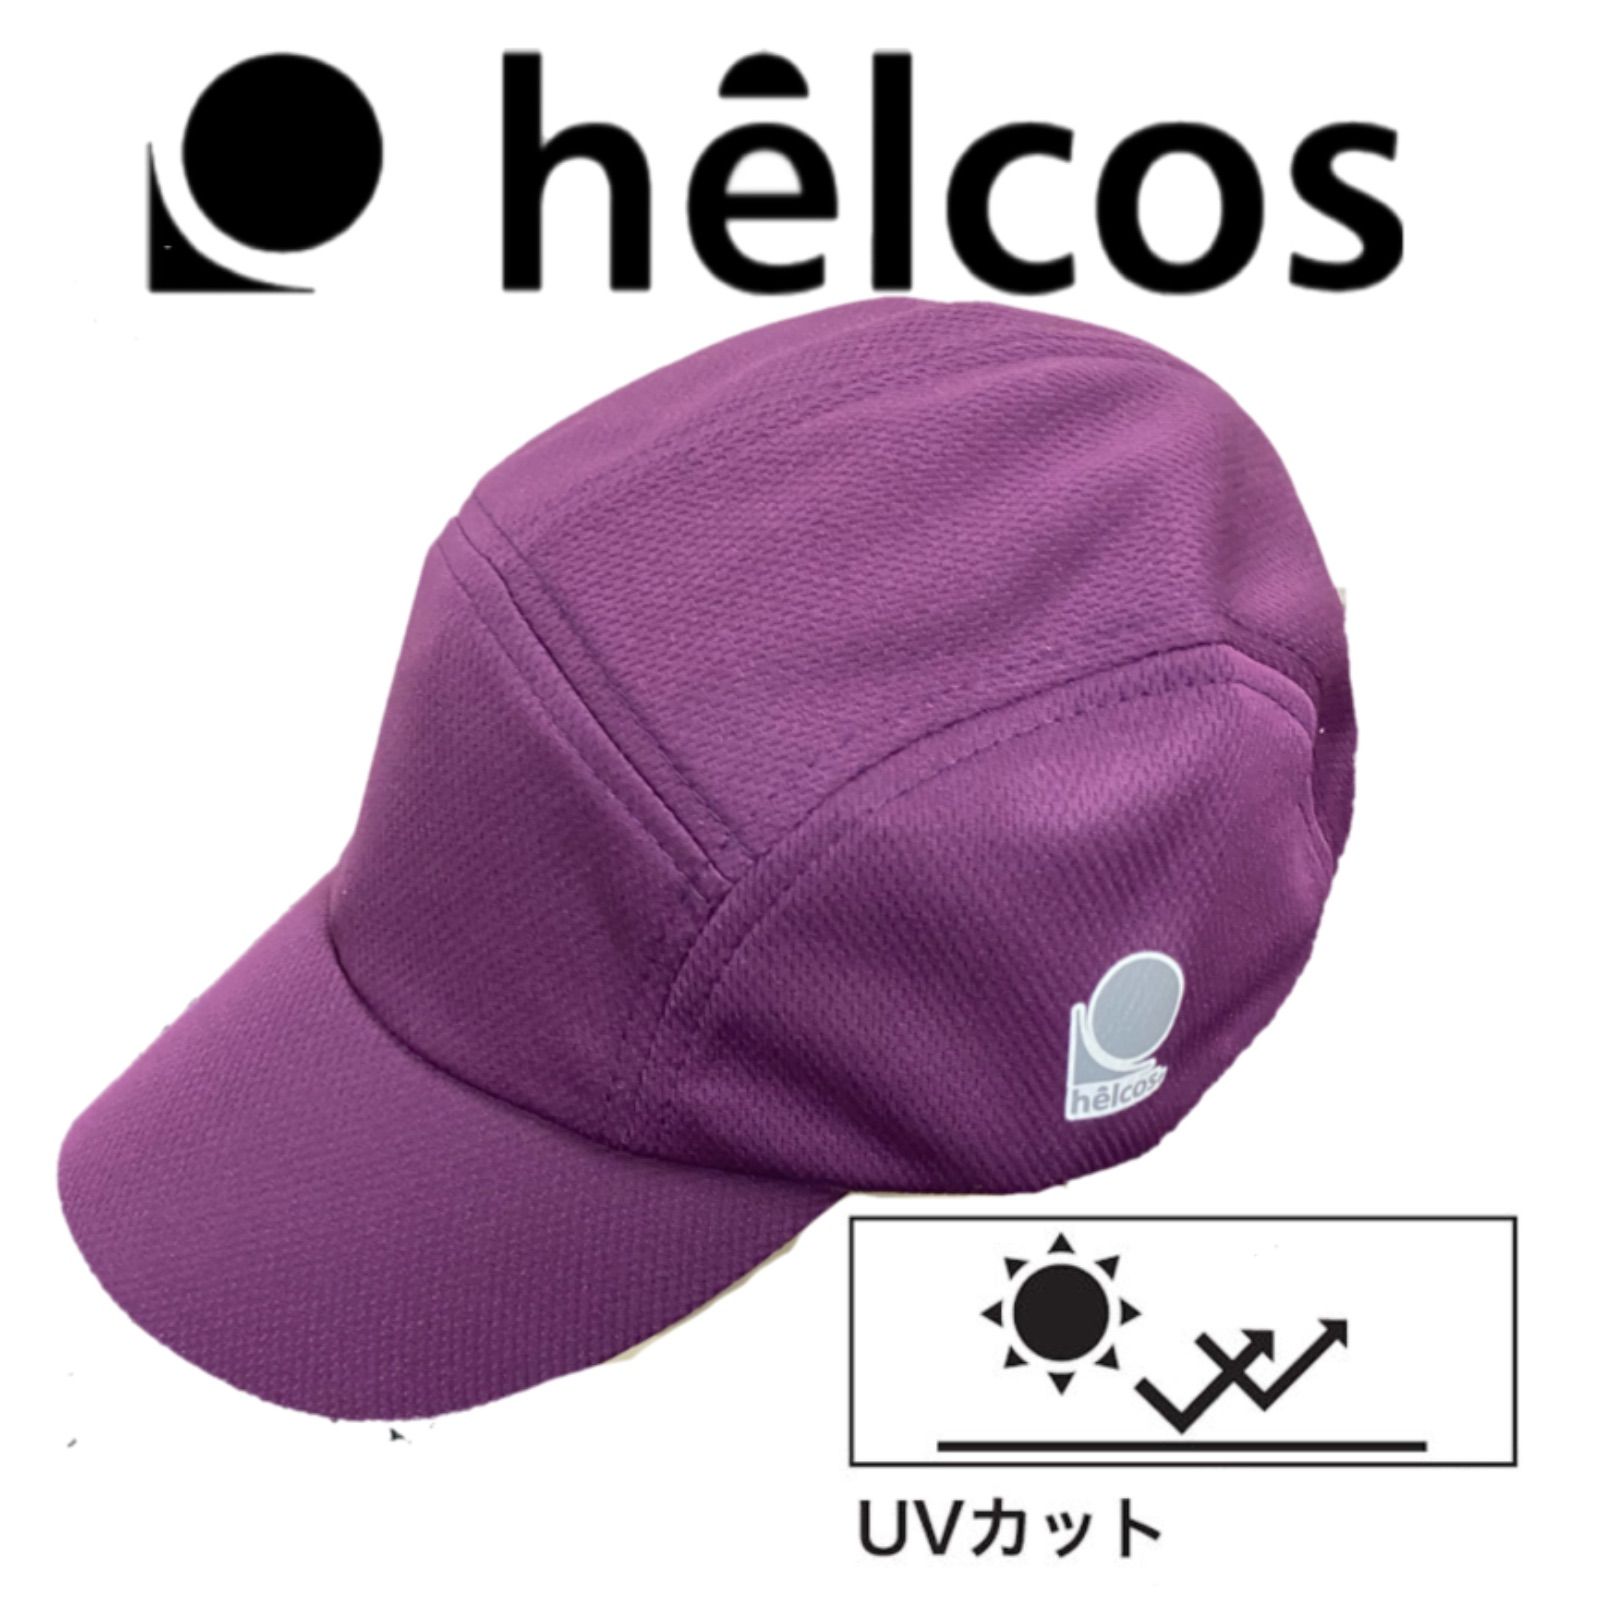 ヒルコス ウォーキング スポーツ キャップ 帽子ＵＶ 10色セット 